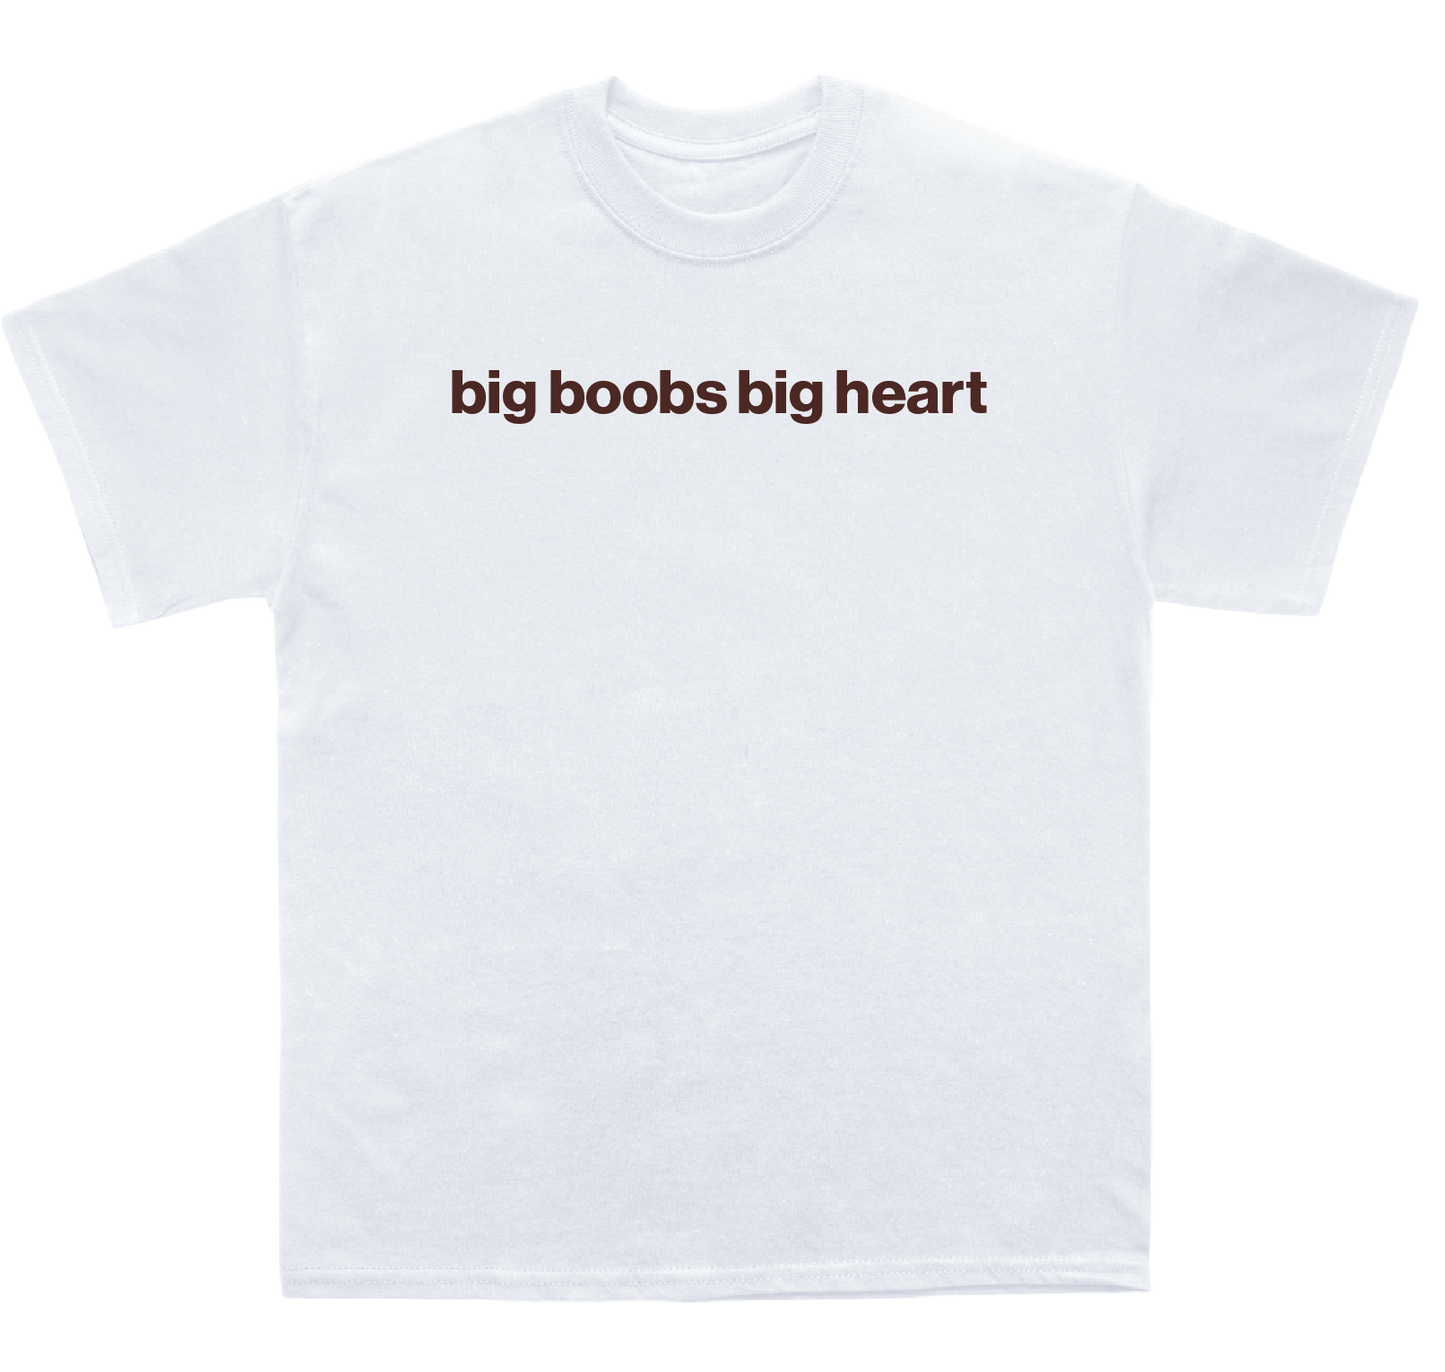 big boobs big heart shirt